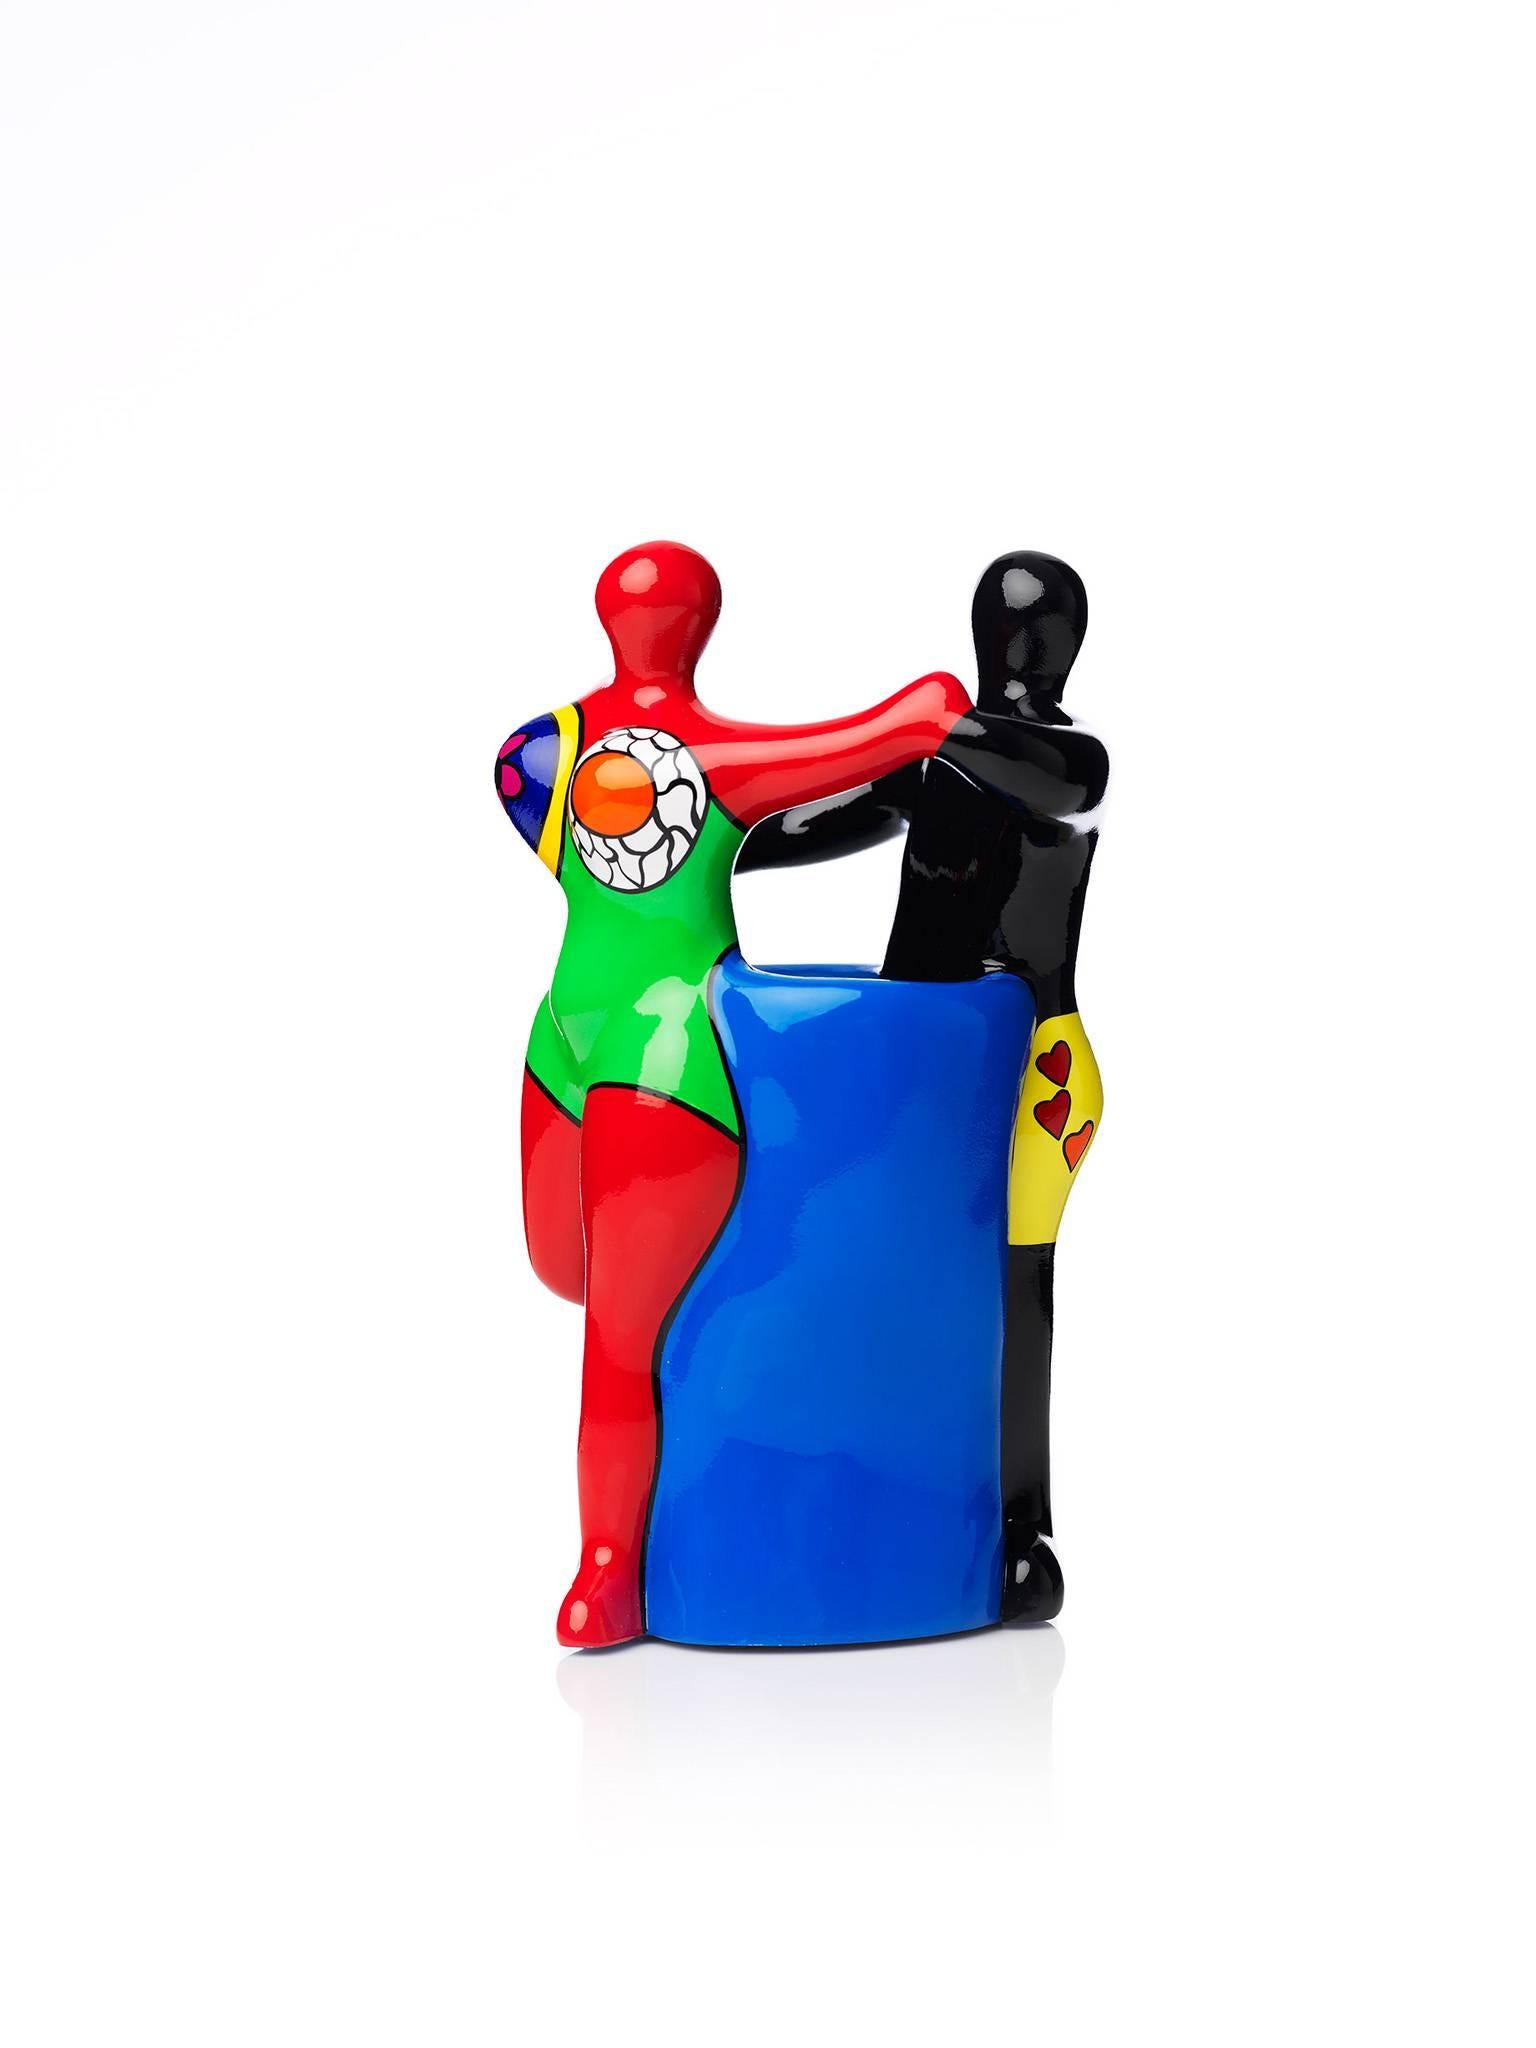 The Couple - Sculpture by Niki de Saint Phalle